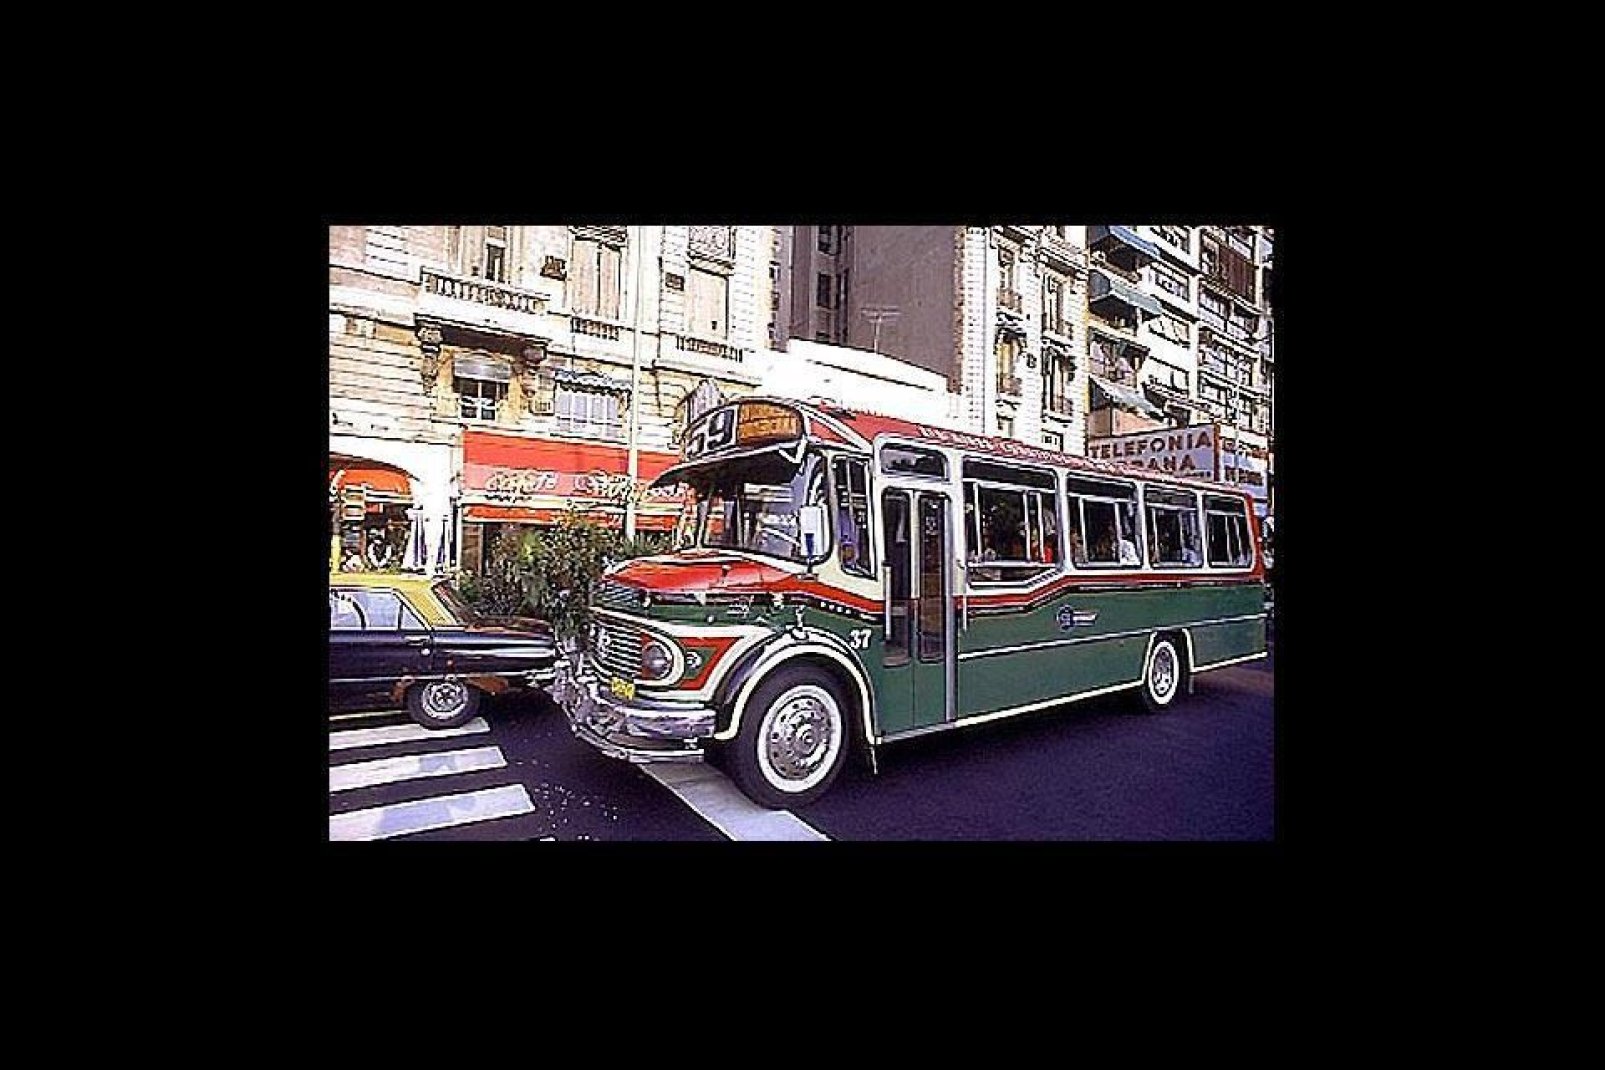 "Coletivo" è il nome attribuito ai bus per il trasporto pubblico di Buenos Aires. Si distinguono per essere molto colorati  (a mano).